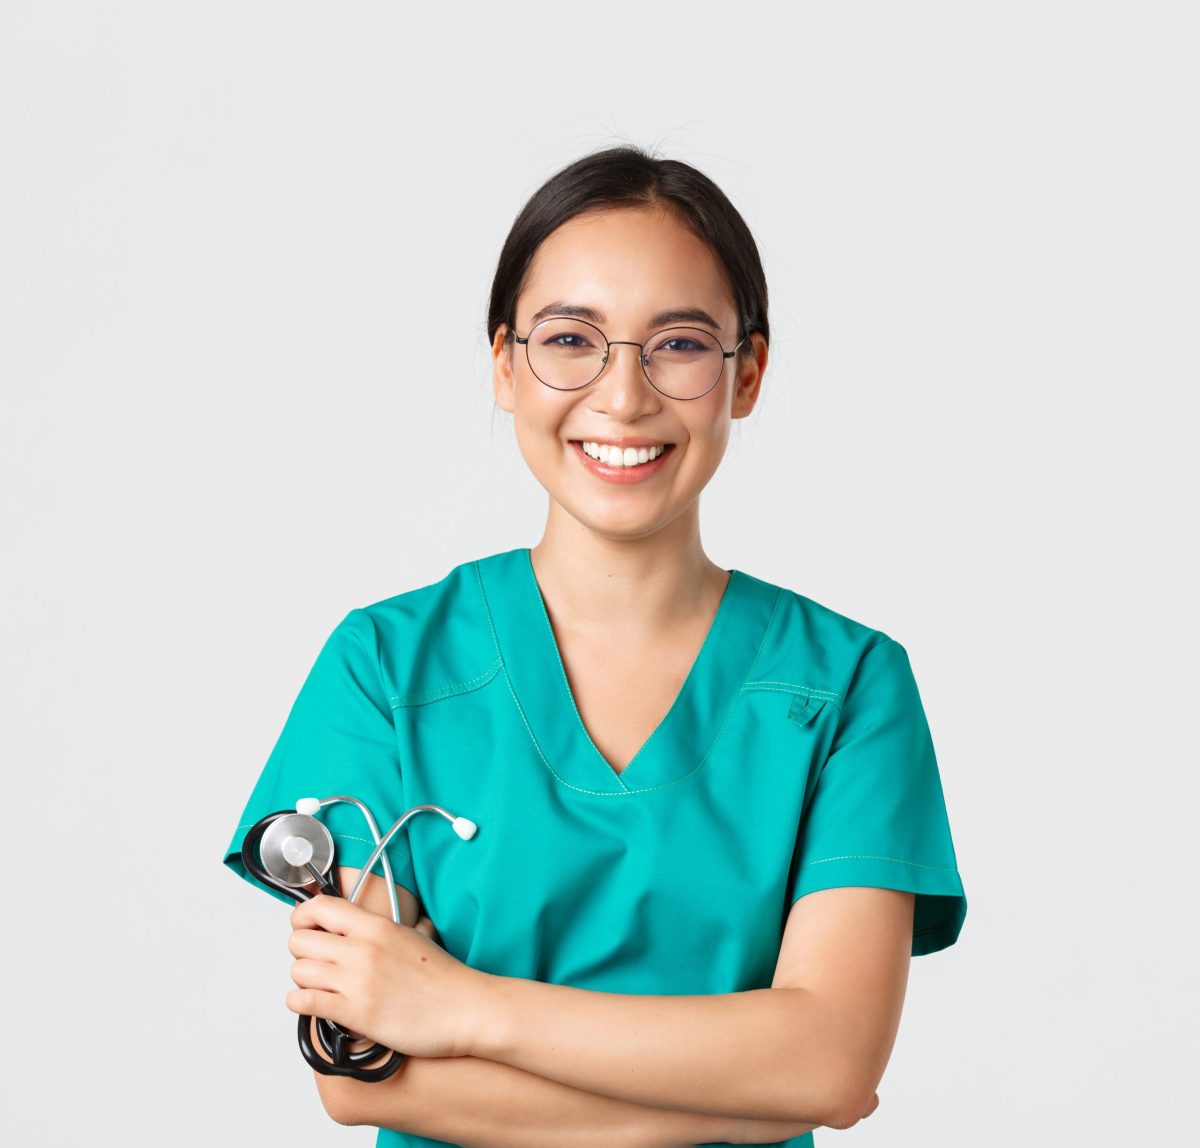 A imagem apresenta uma médica de origem asiática, vestindo uniforme de médica, segurando o estetoscópio de braços cruzados em frente ao fundo cinza